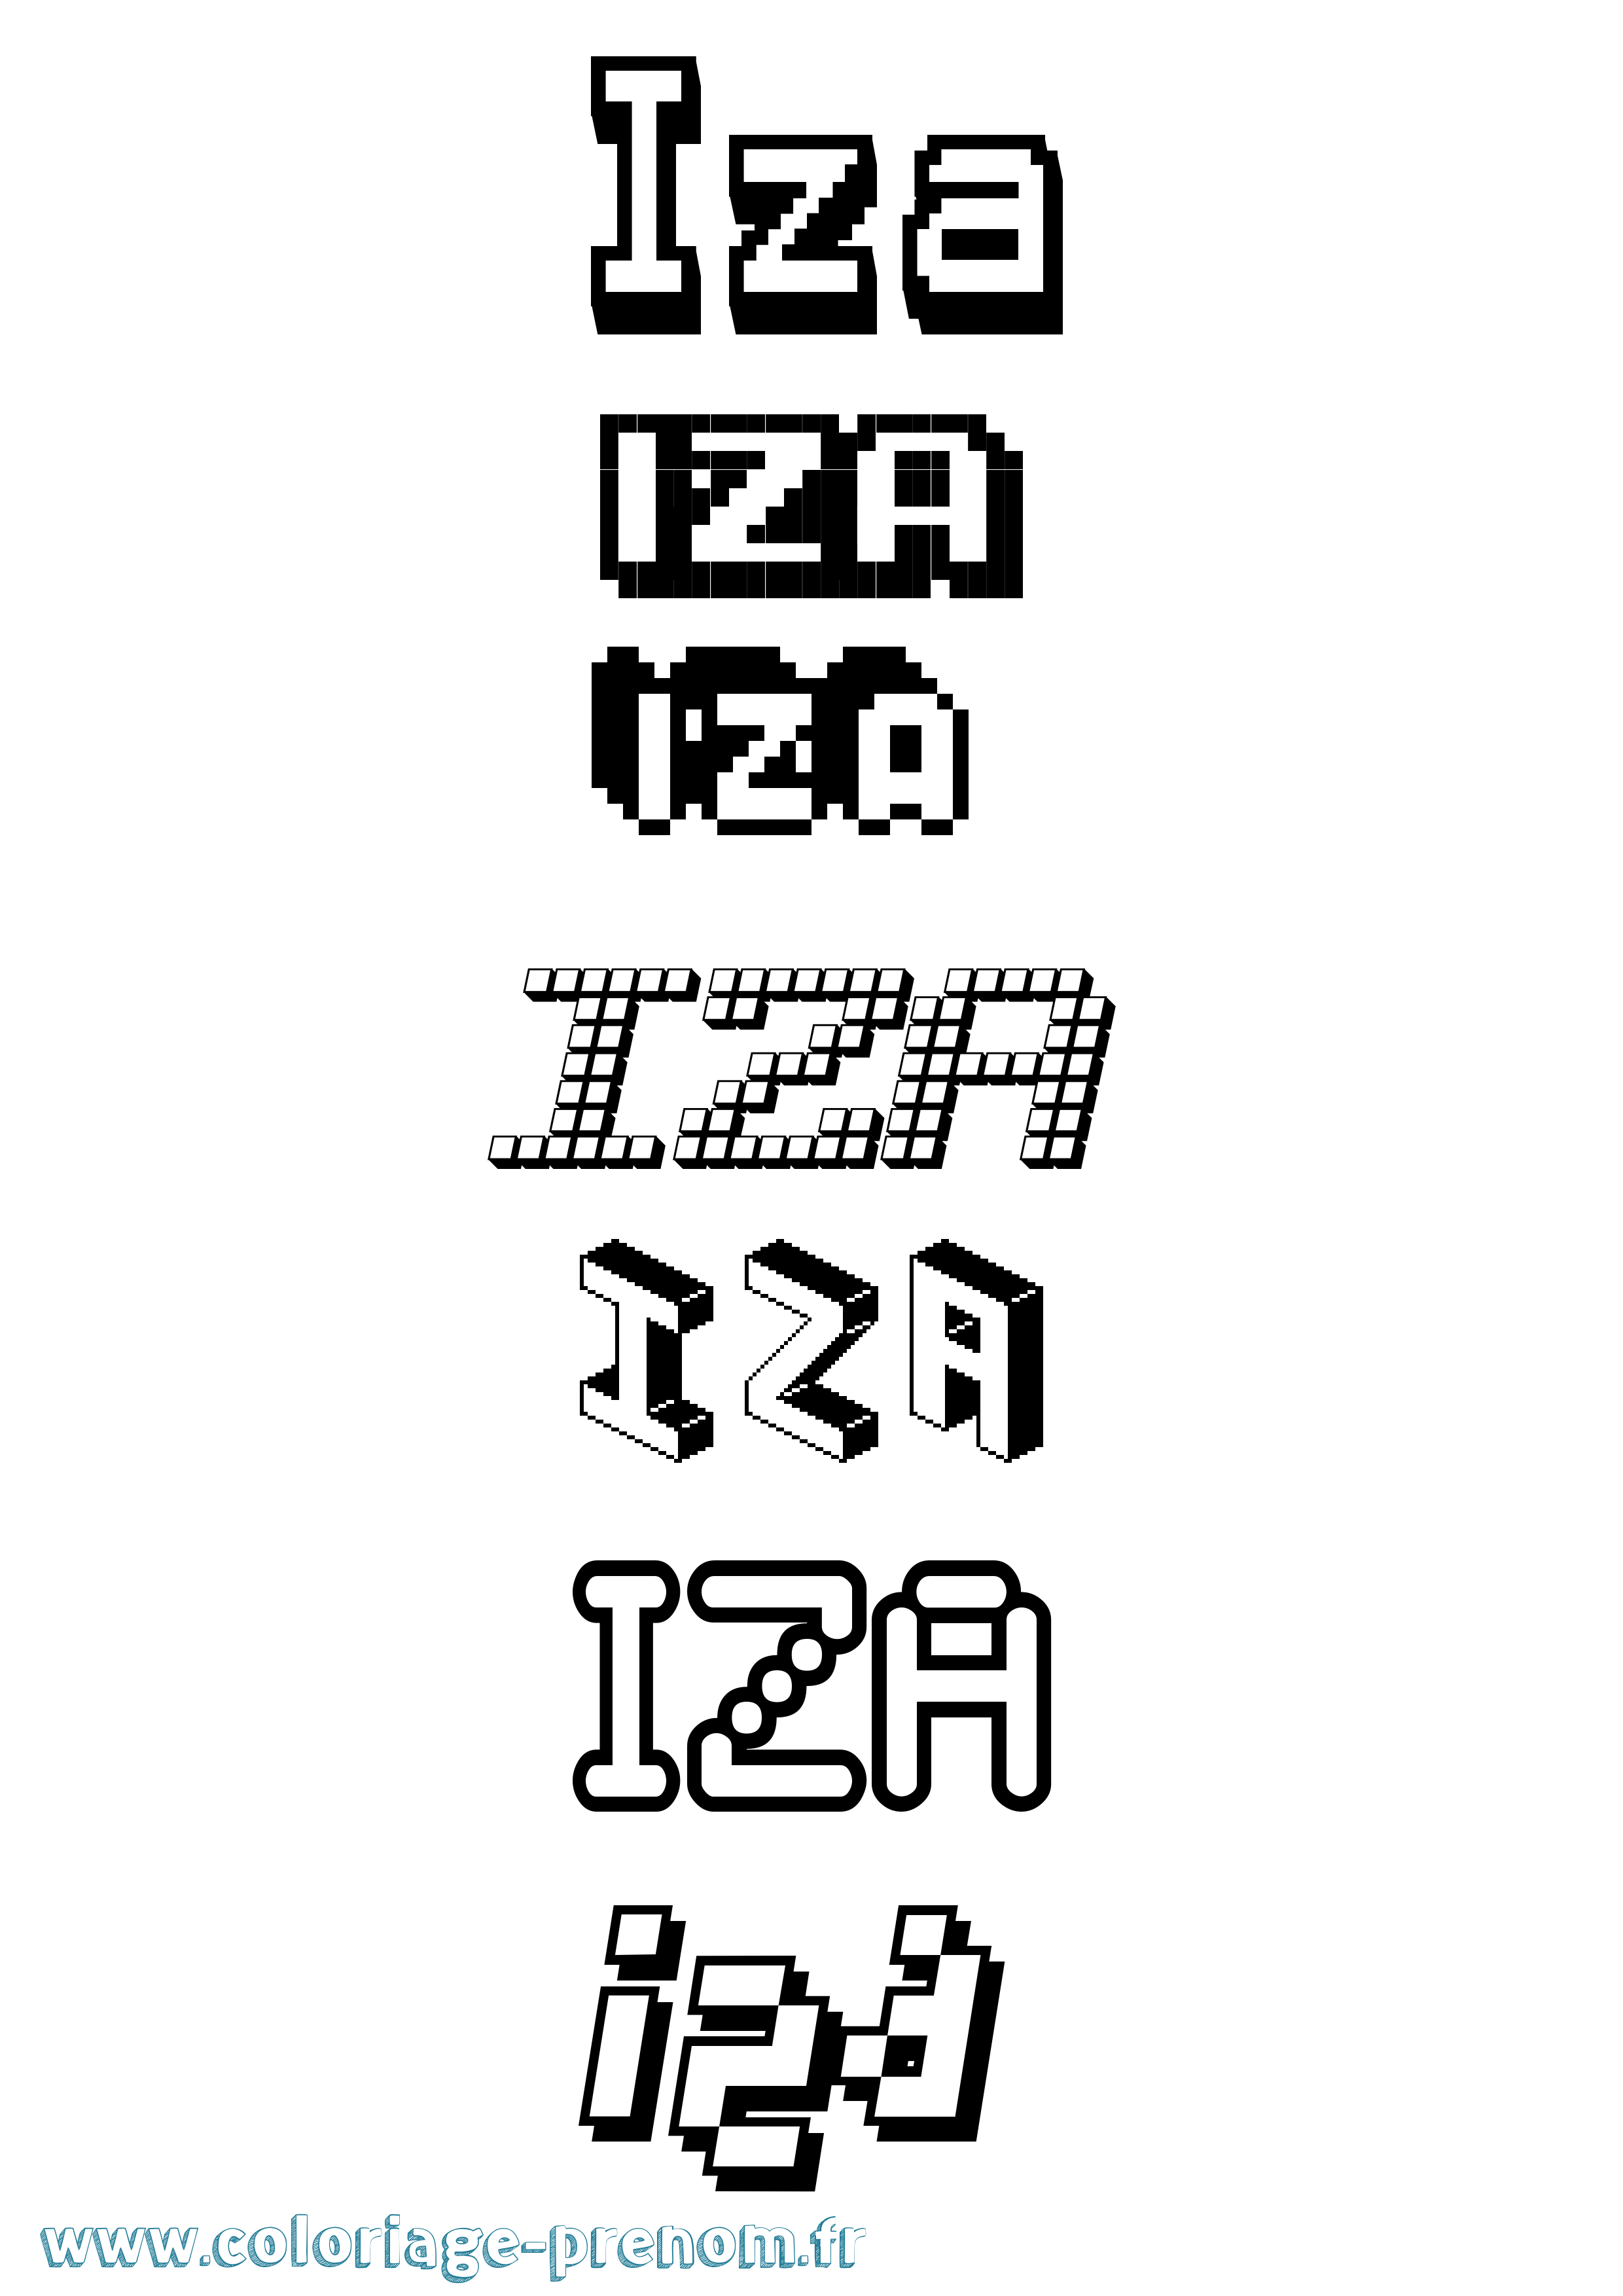 Coloriage prénom Iza Pixel